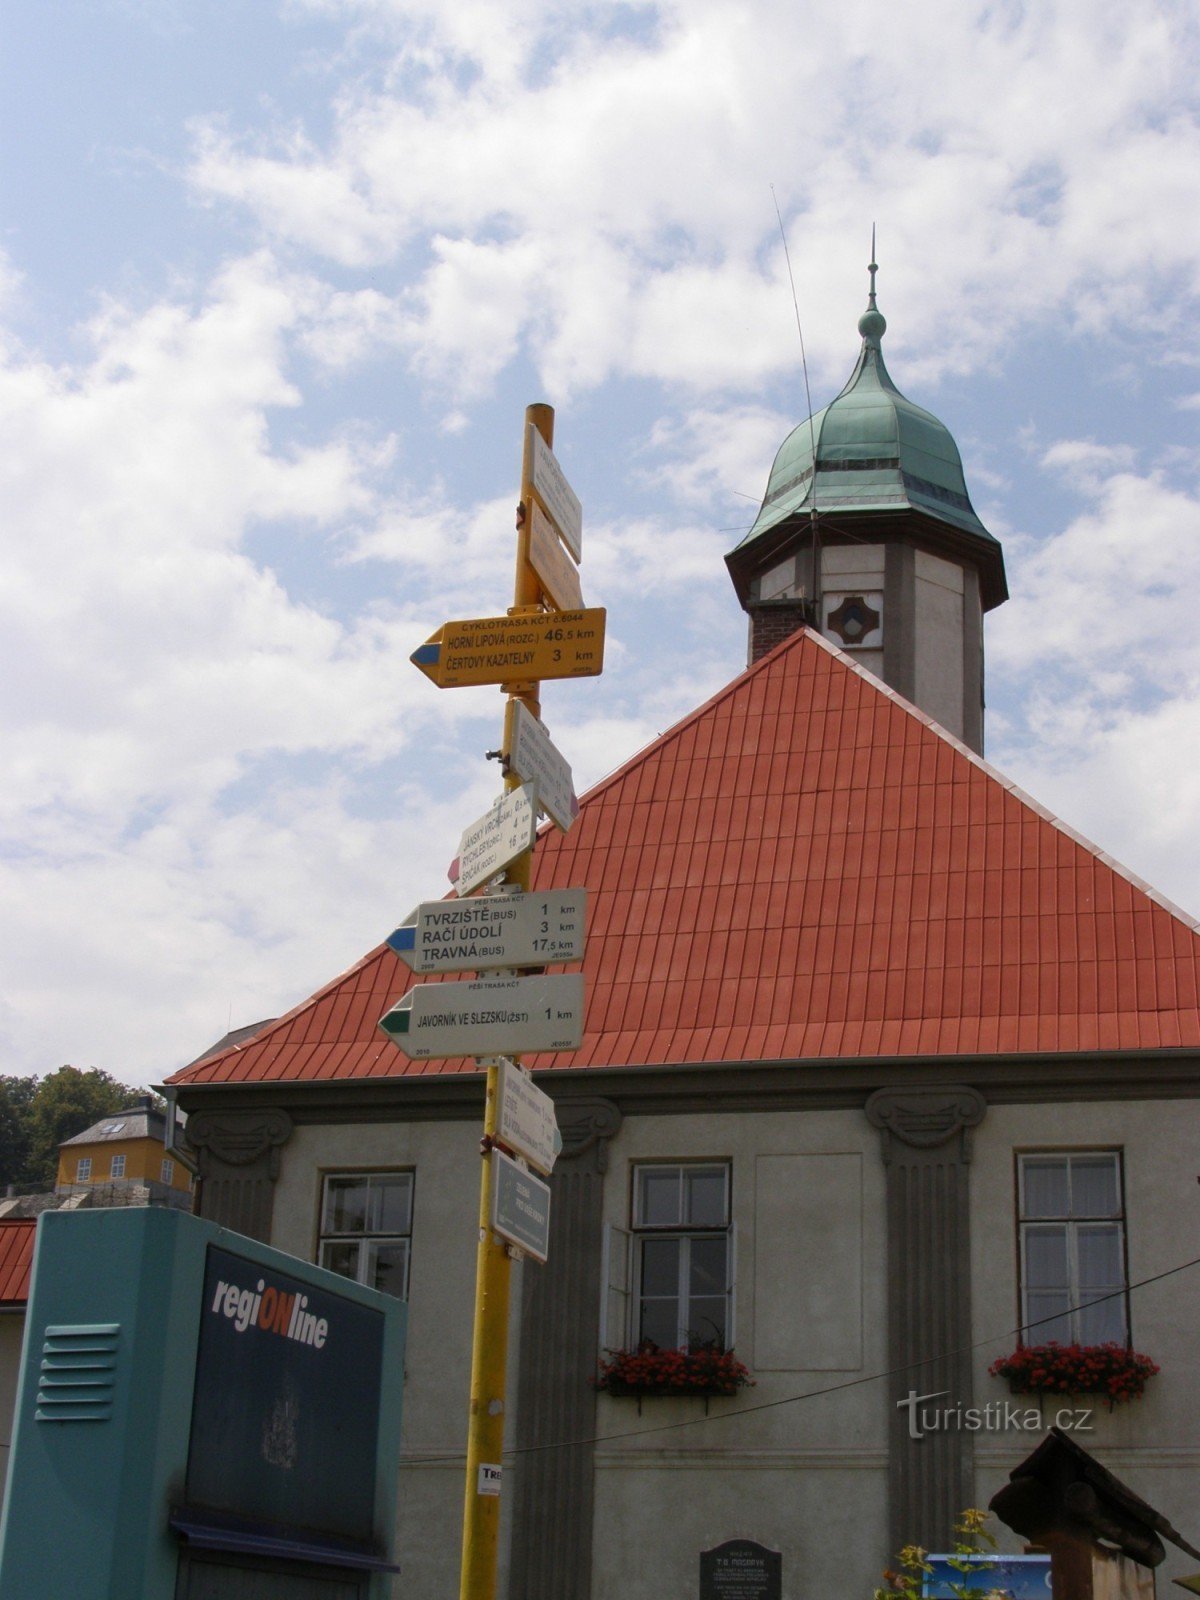 tourist crossroads Javorník - náměstí